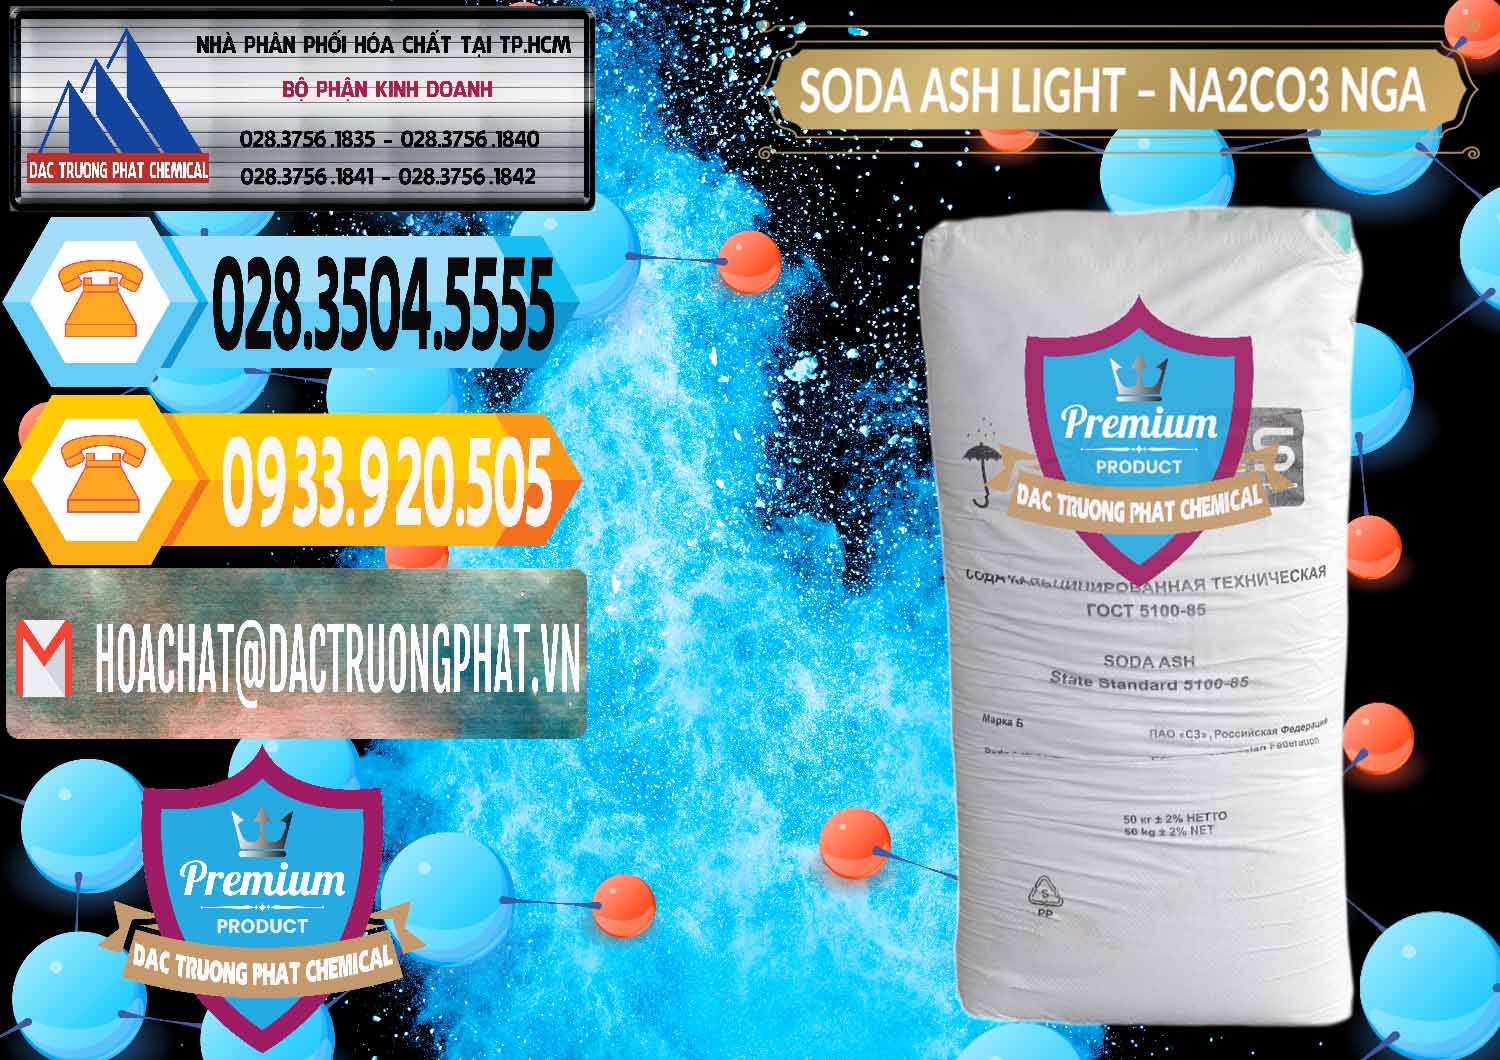 Kinh doanh - bán Soda Ash Light - NA2CO3 Nga Russia - 0128 - Nơi bán - cung cấp hóa chất tại TP.HCM - hoachattayrua.net